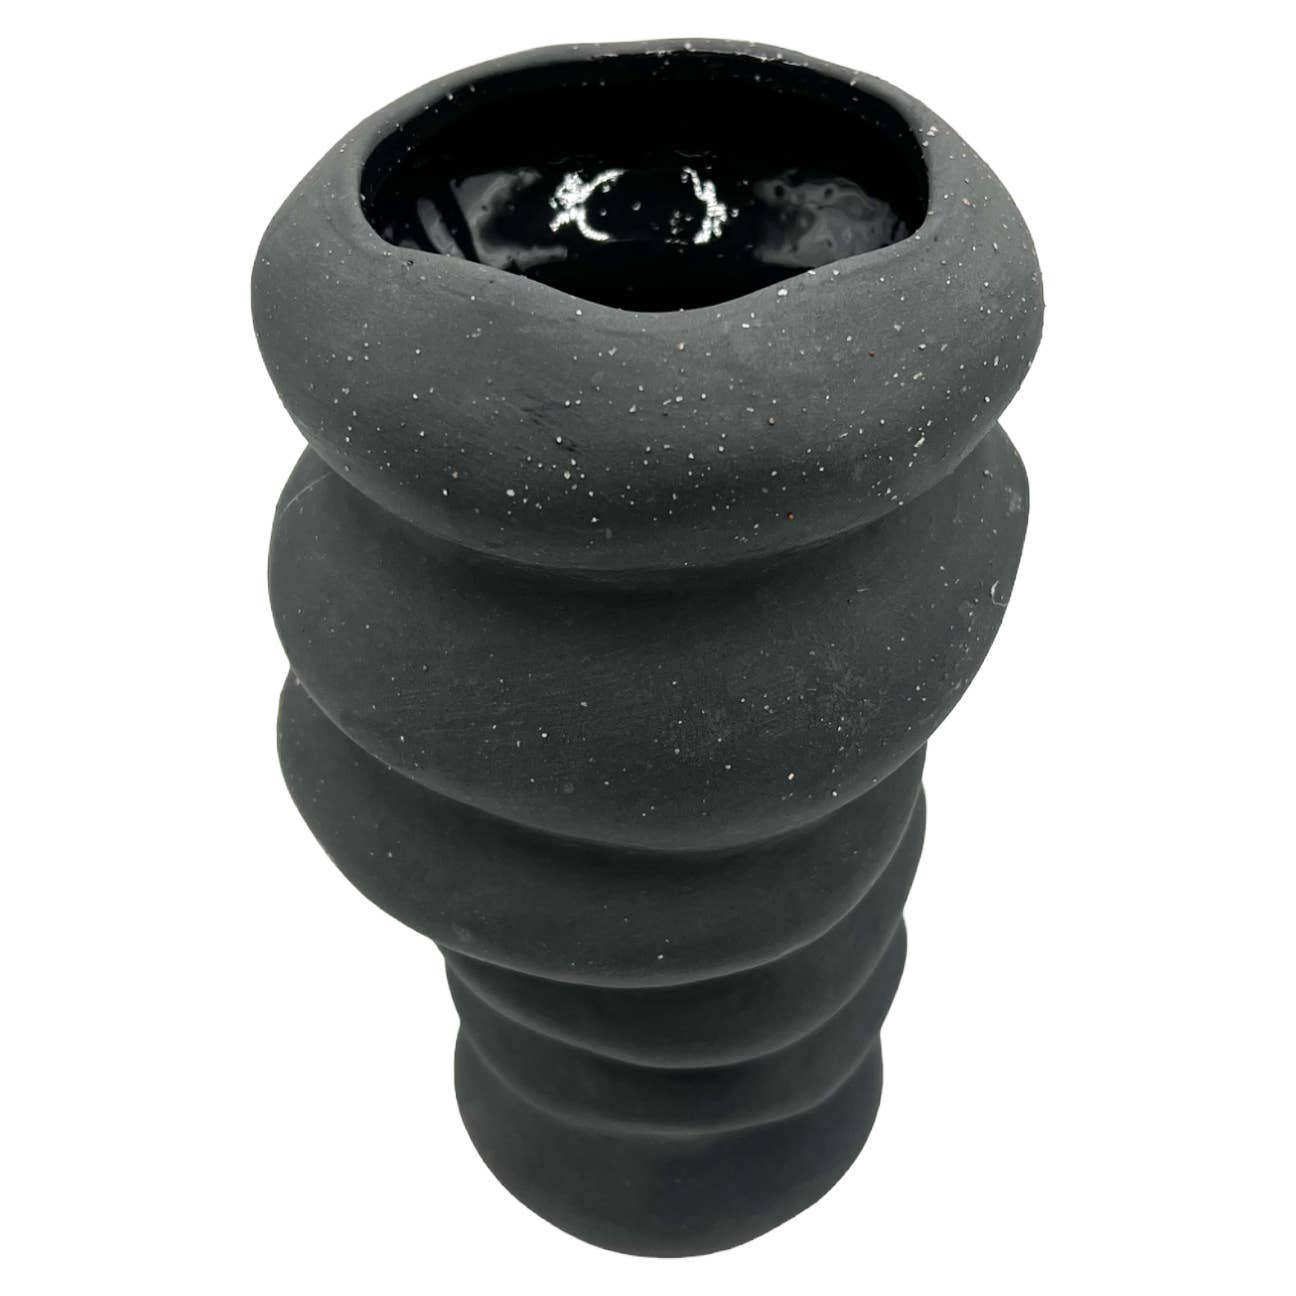 9" High Modern Ceramic Vase in Black